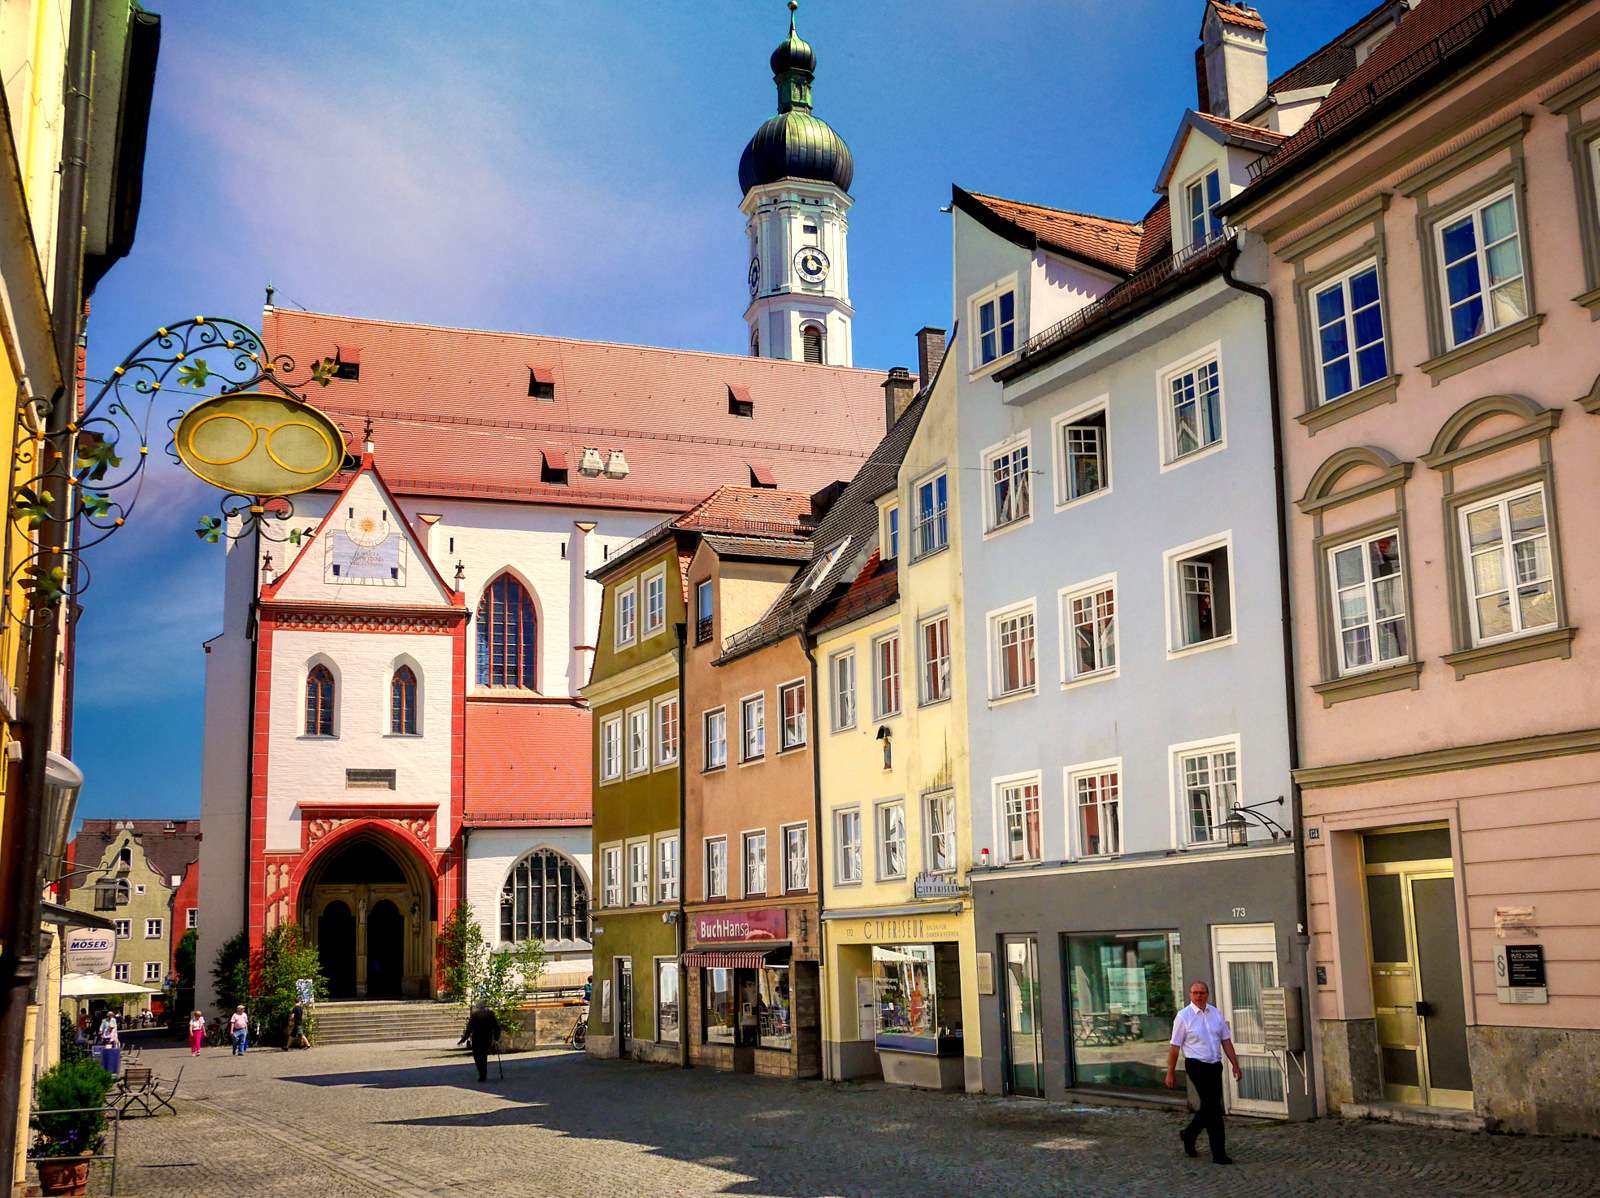 Un oraș bavarez fermecător puzzle online